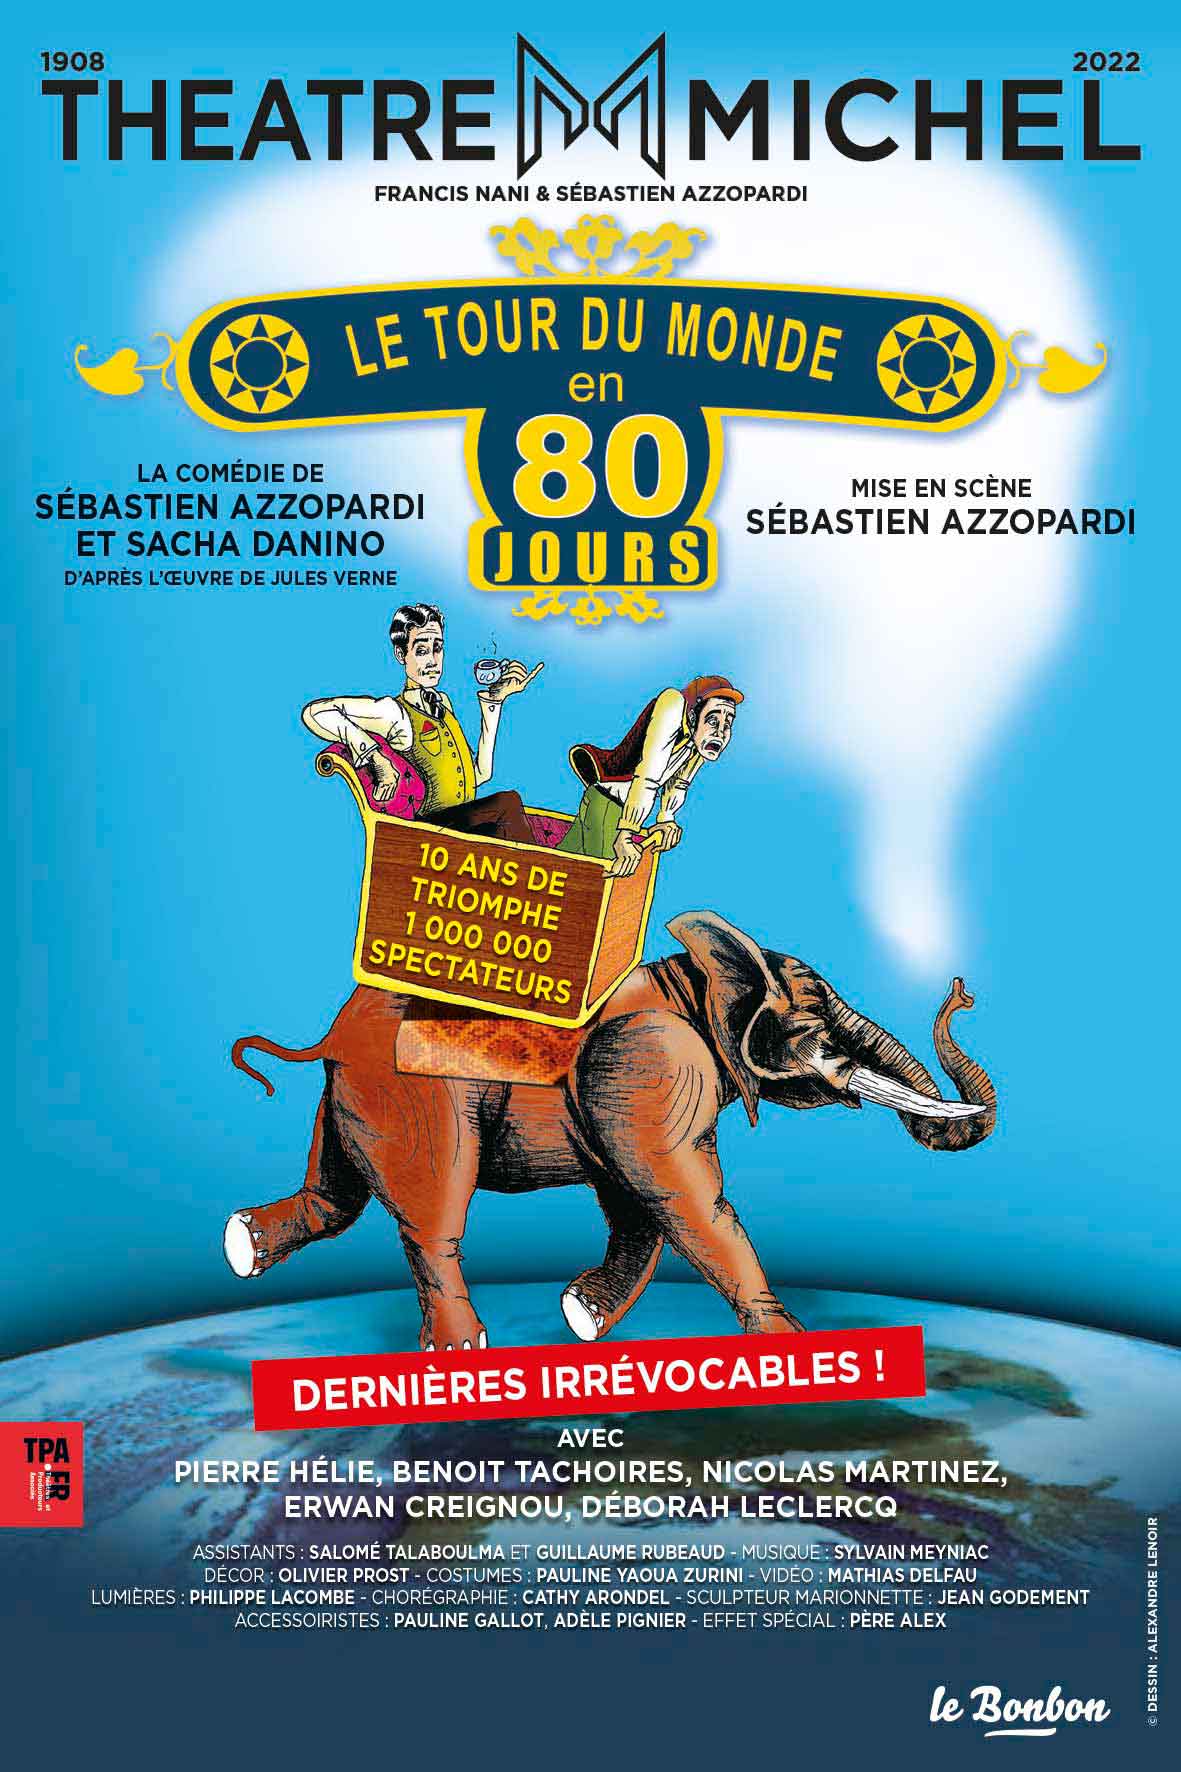 Le Tour du monde en 80 jours - Théâtre Michel